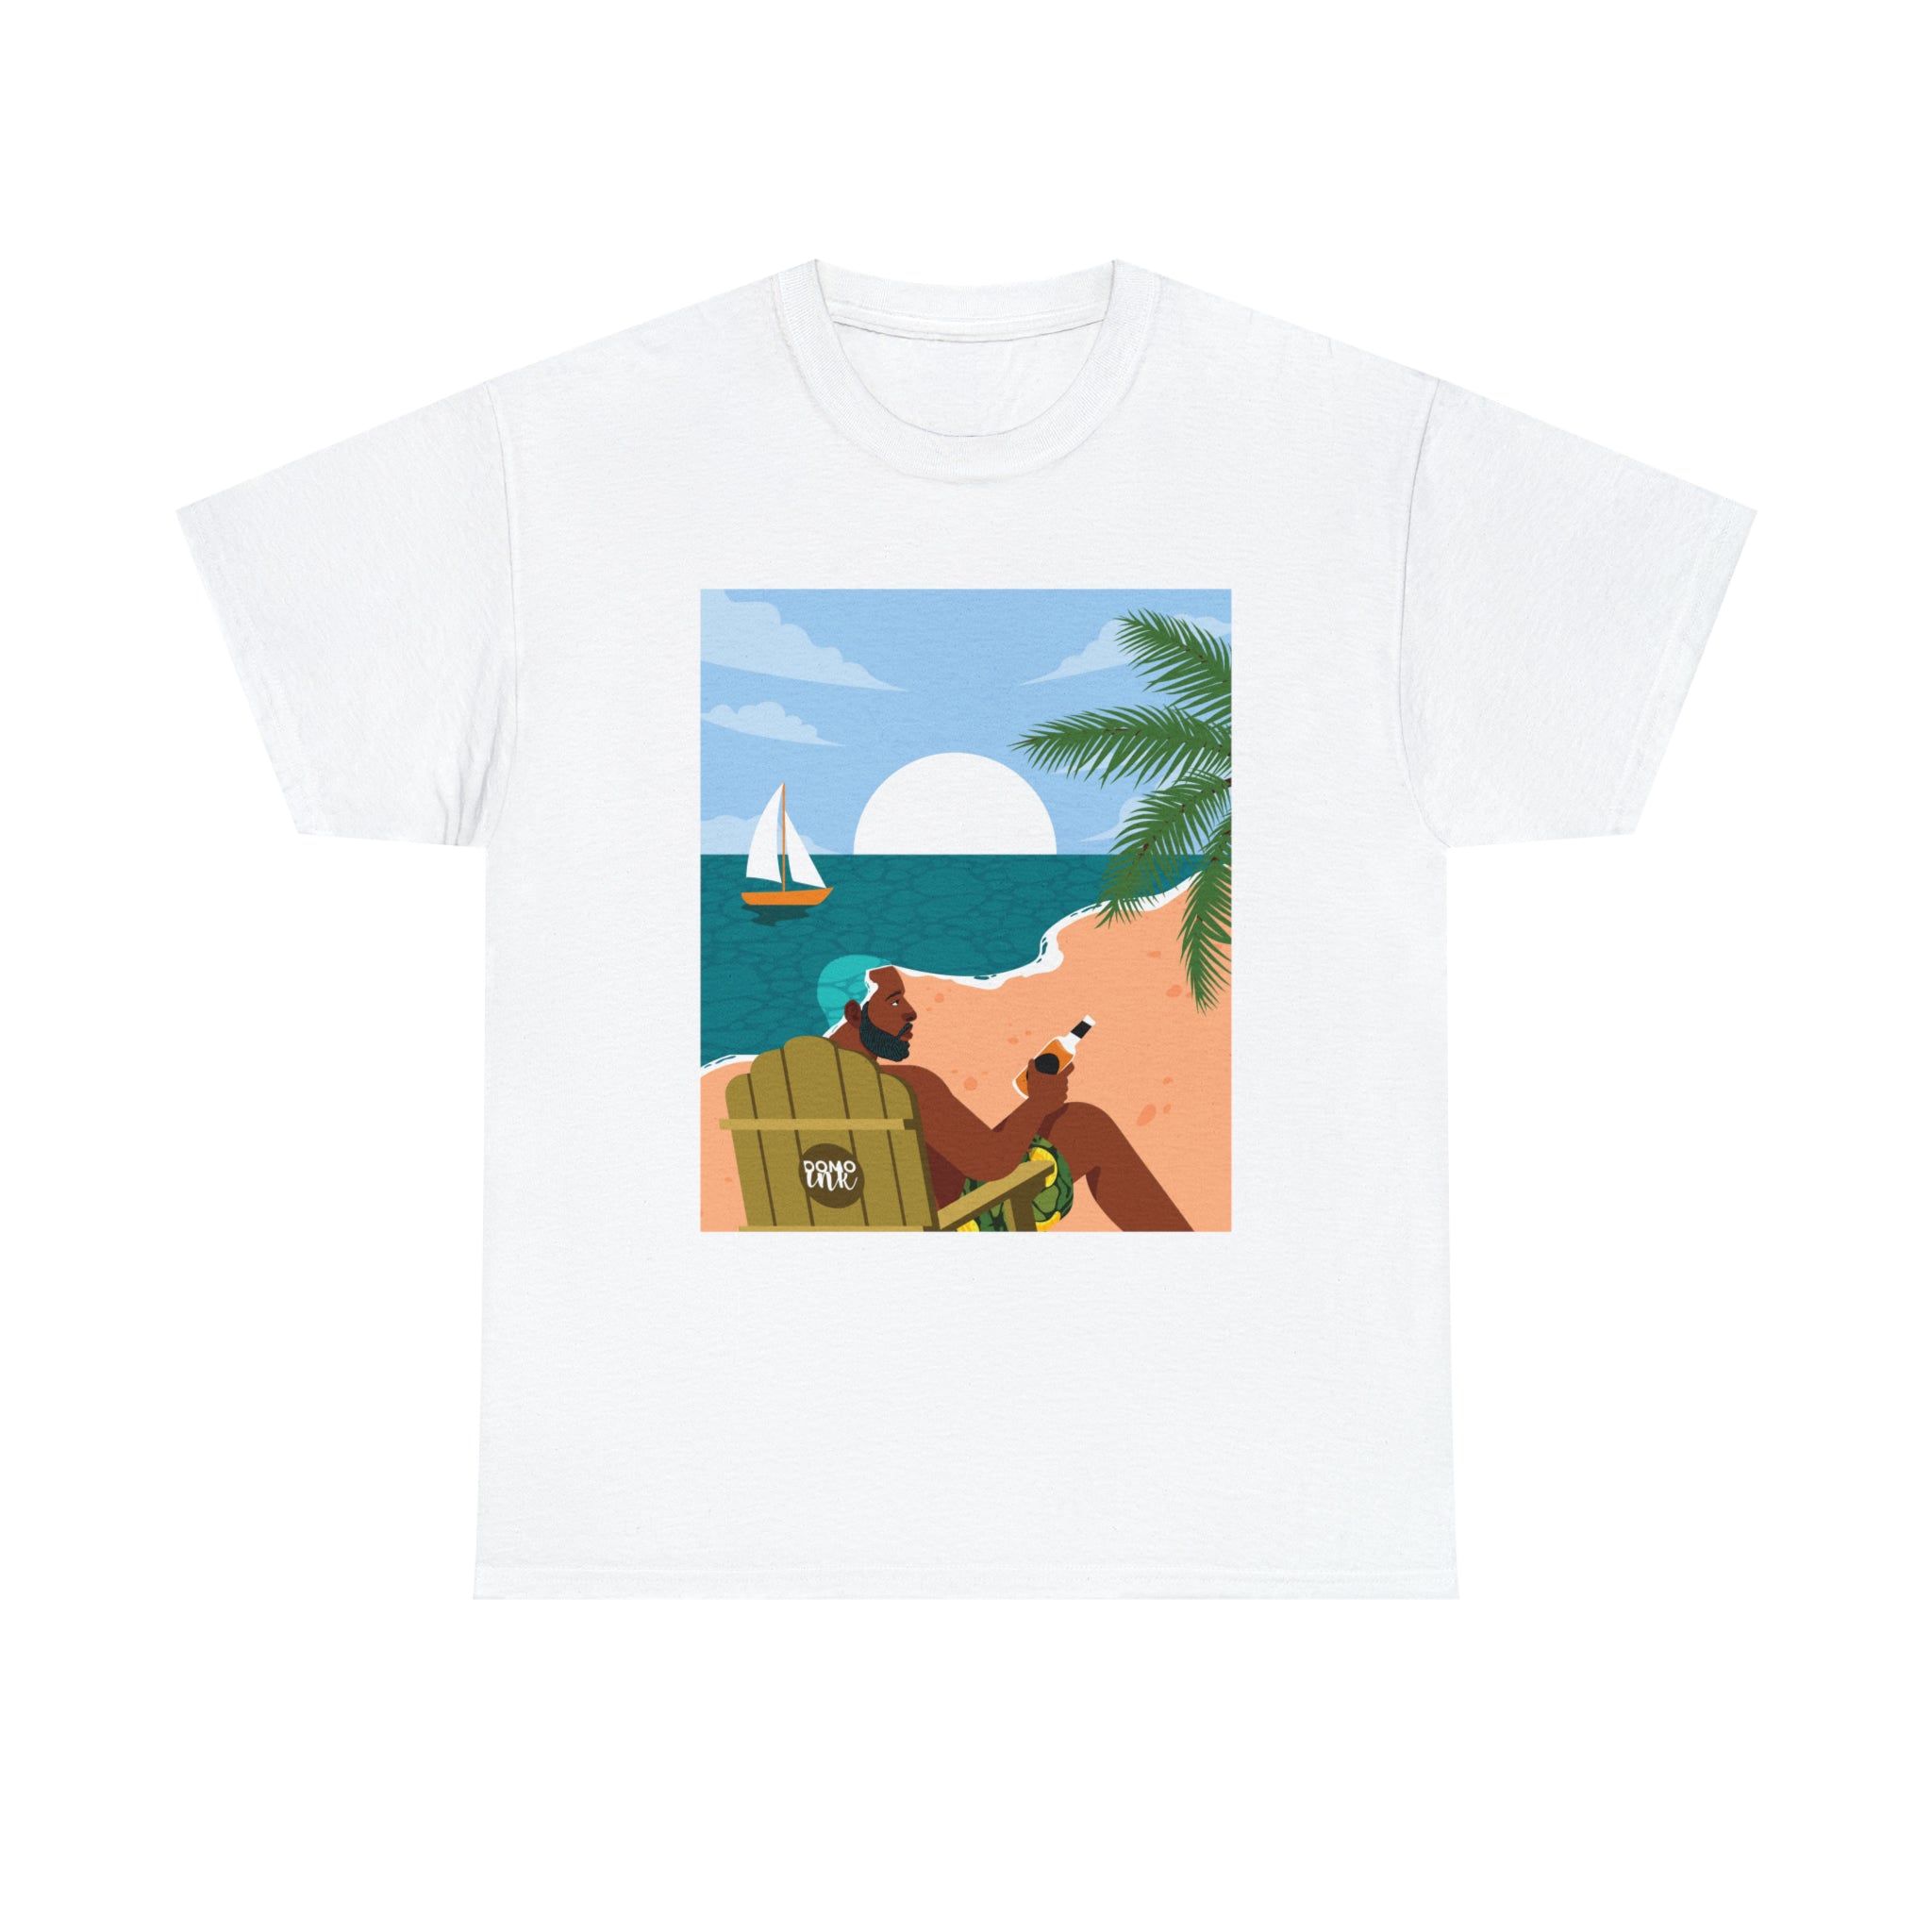 "Summer '93" Unisex T-Shirt